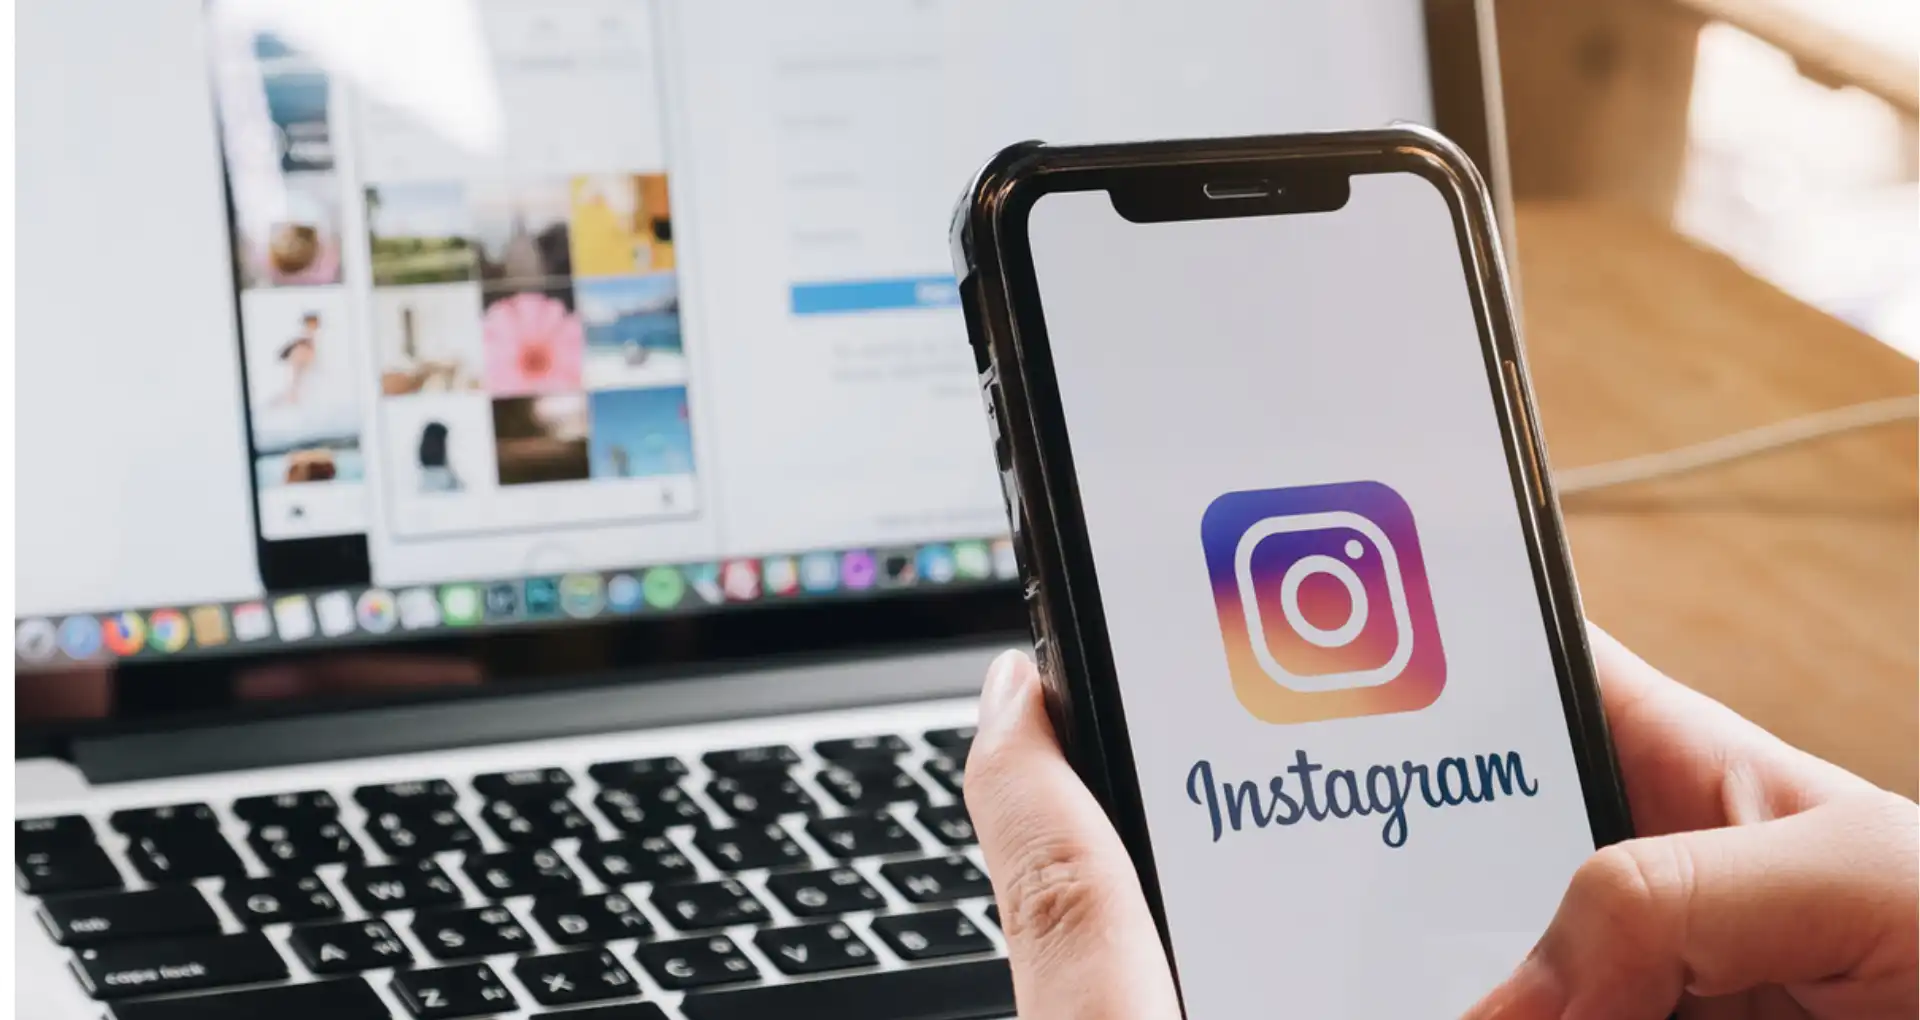 Hapus Riwayat Log In Instagram di Smartphone dan PC